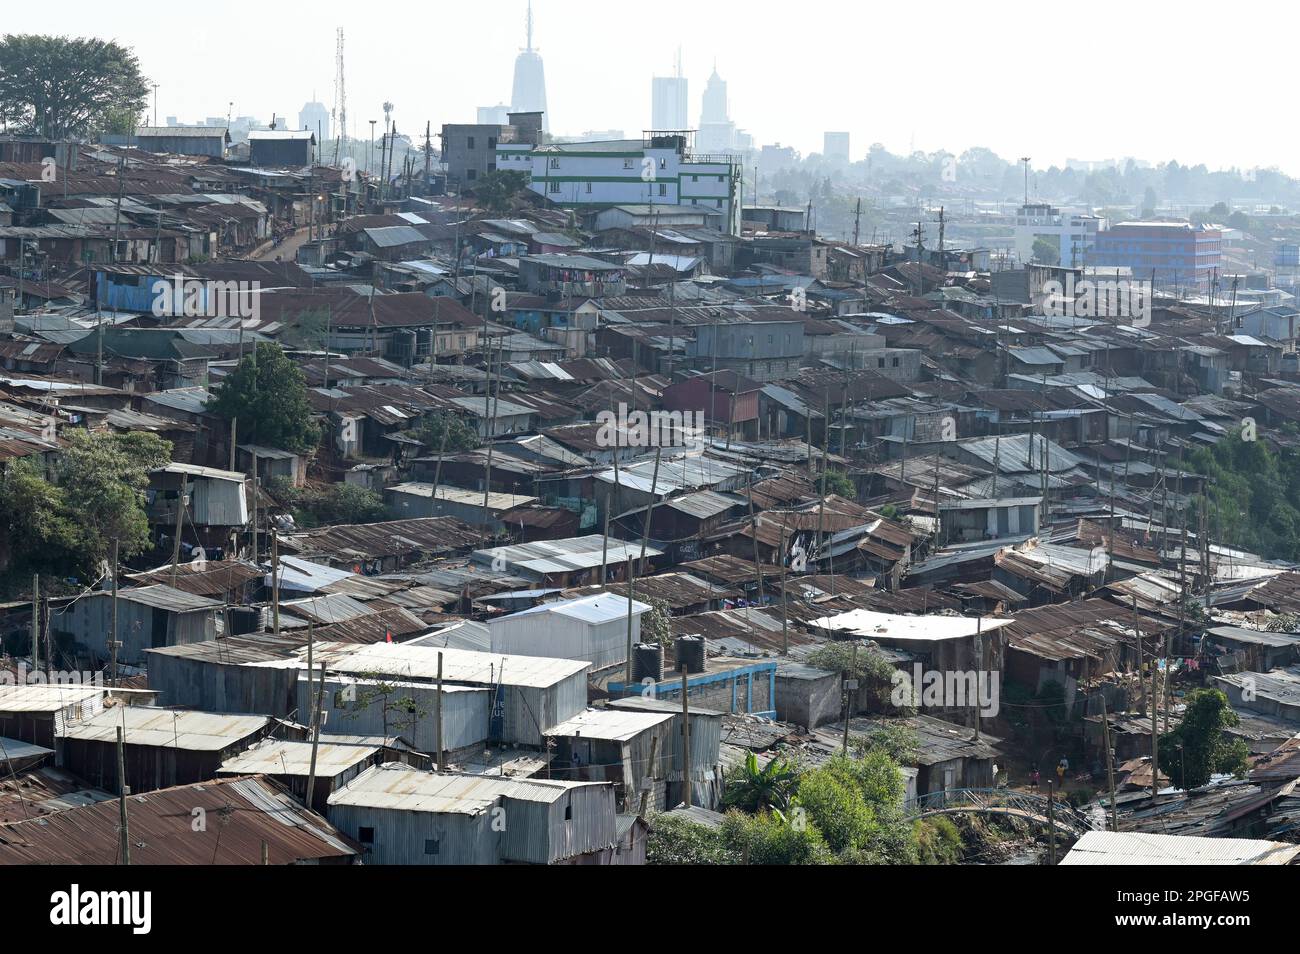 KENIA, Nairobi, Kibera Slum und Skyline der Innenstadt / KENIA, Nairobi, Slum Kibera und Hochhäuser im Stadtzentrum Stockfoto